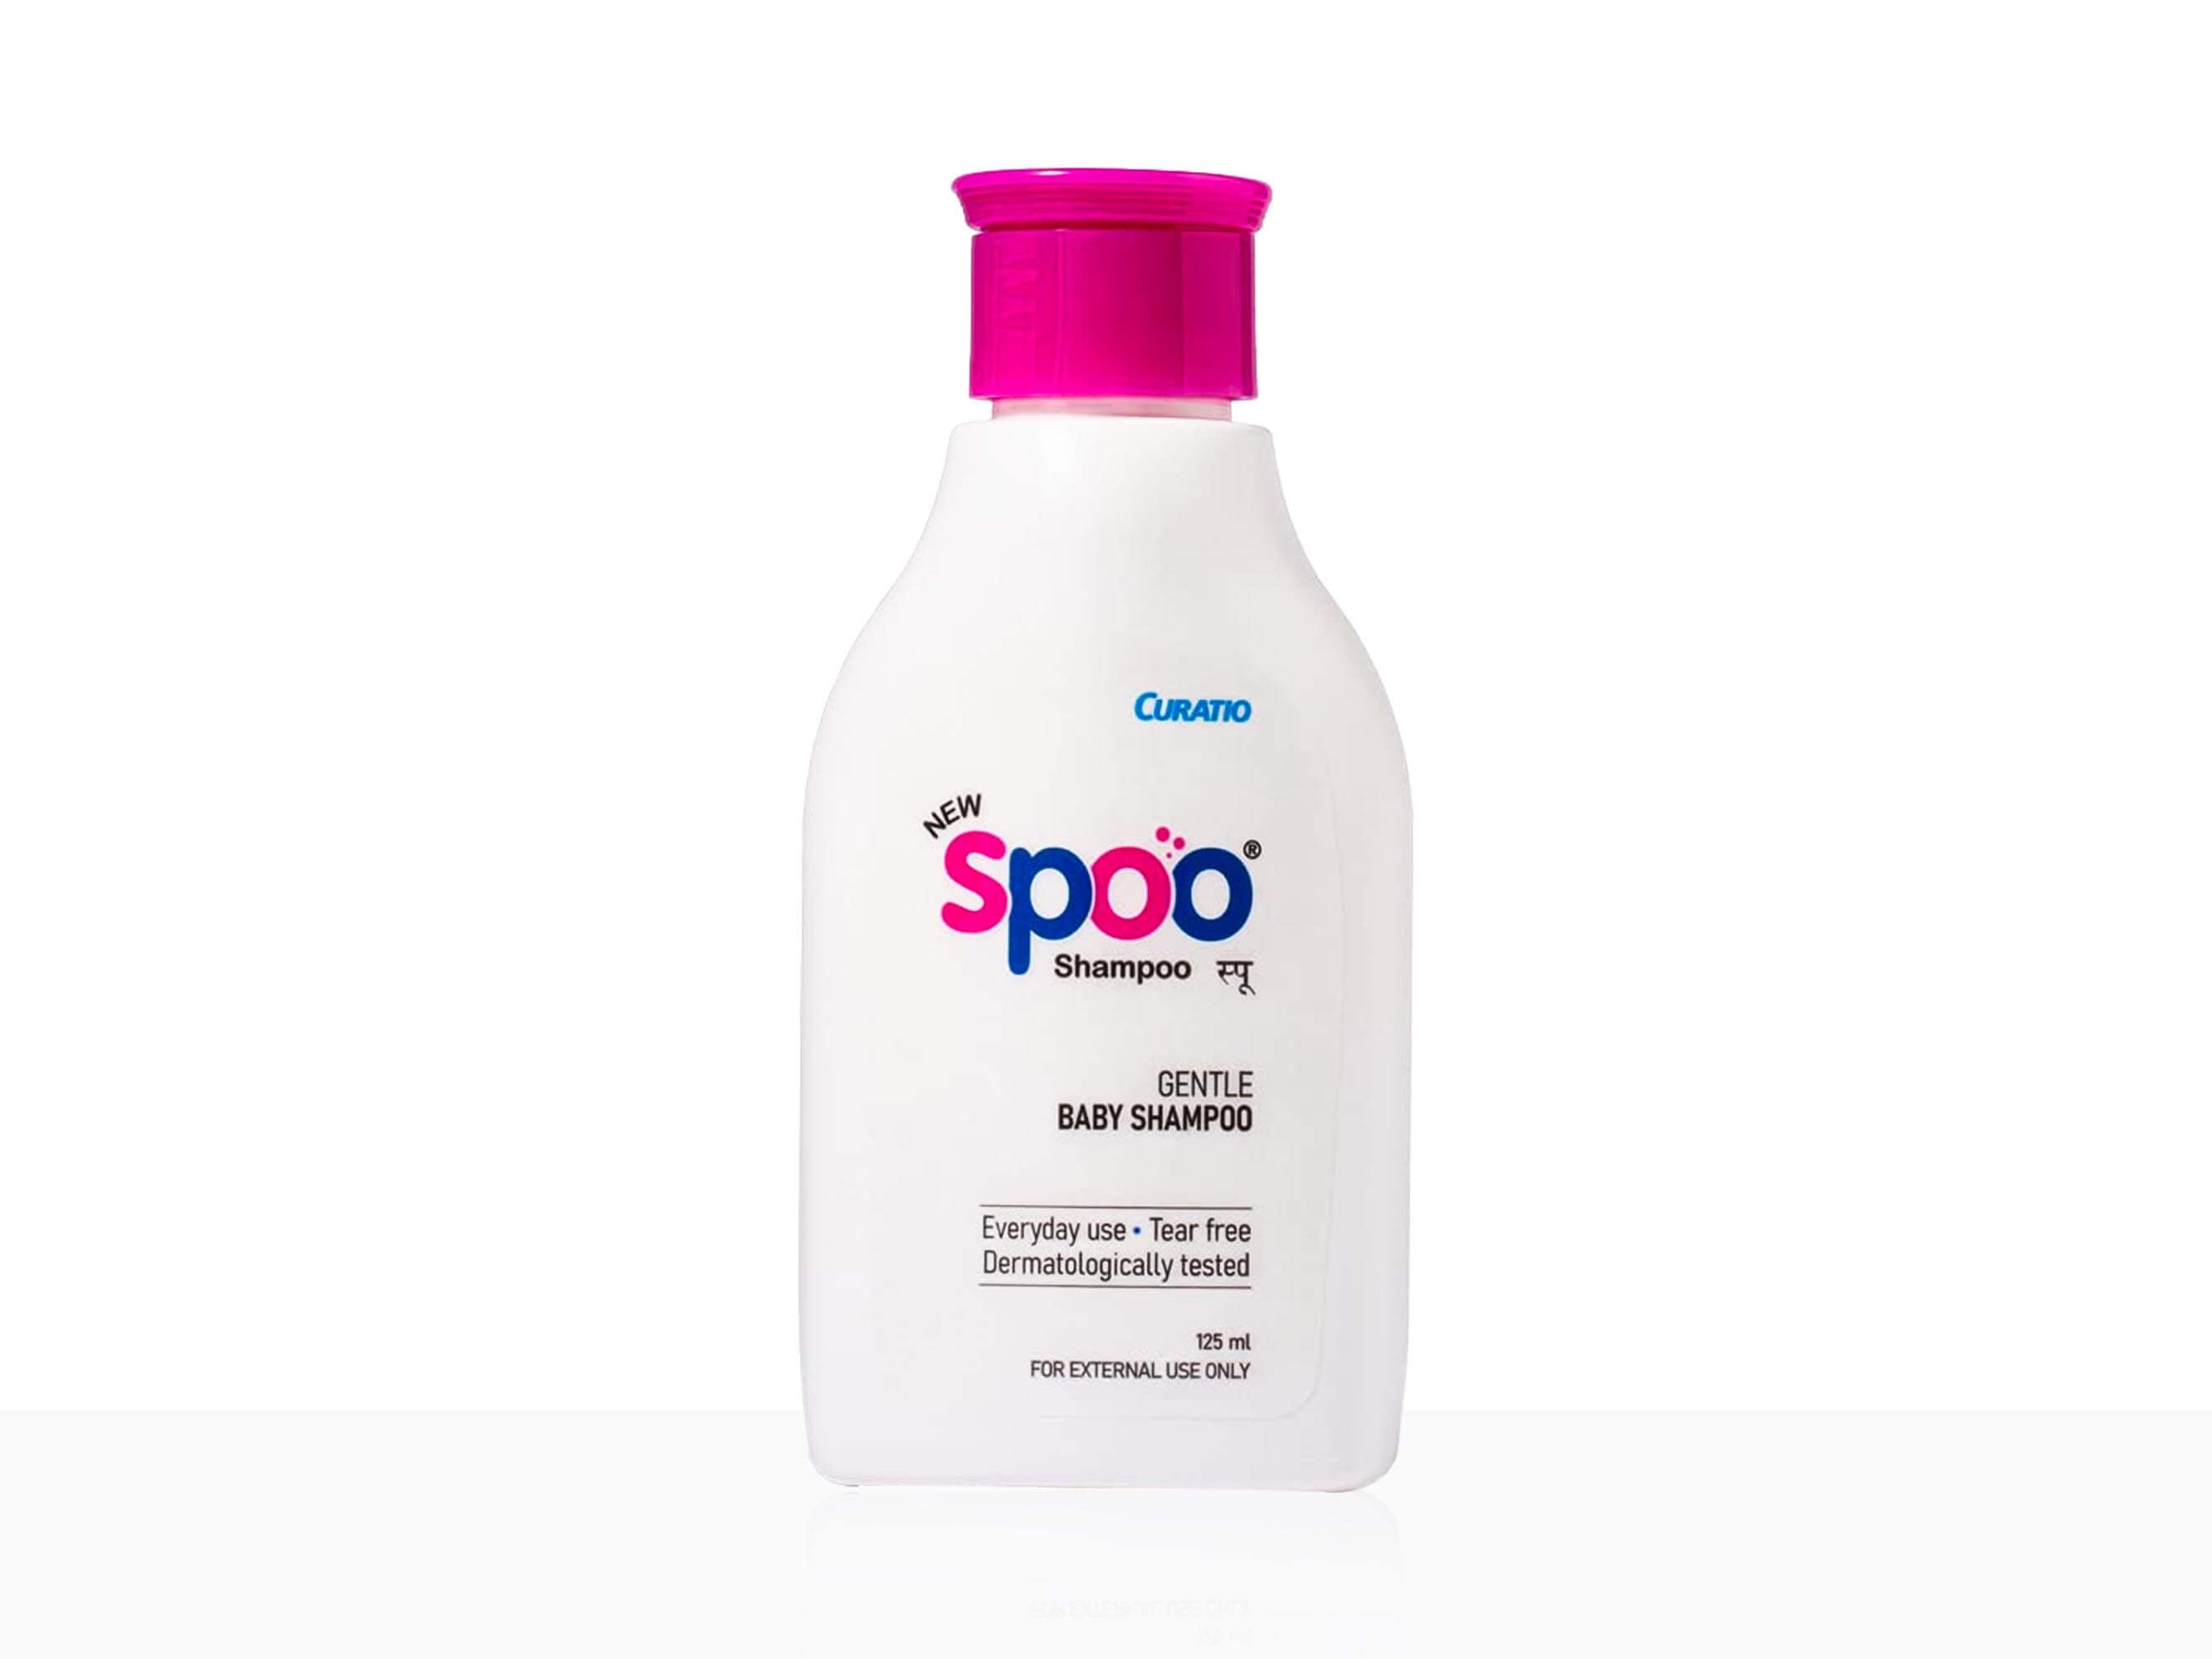 Curatio New Spoo Gentle Baby Shampoo - Clinikally